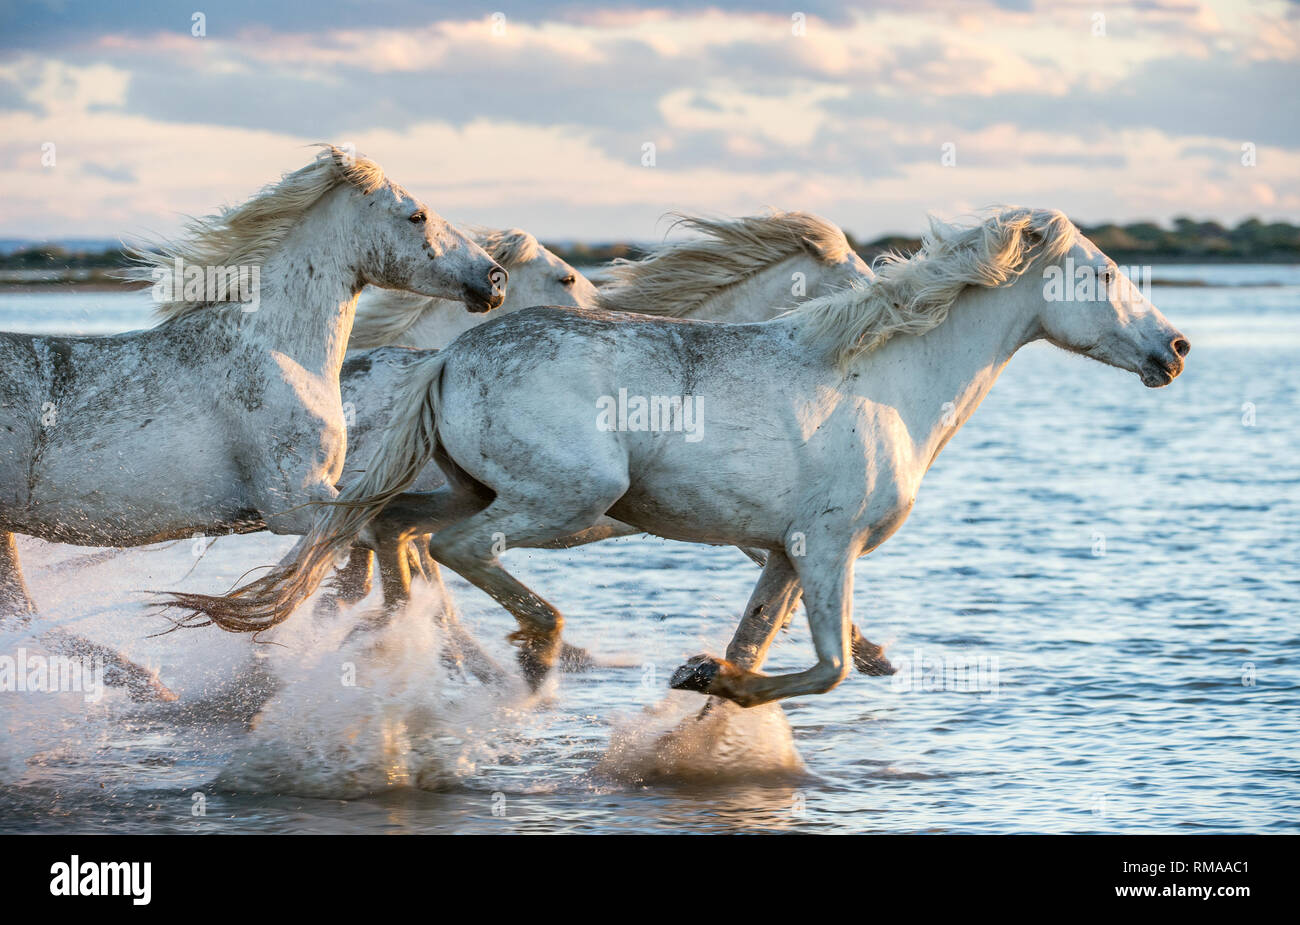 White Camargue cavalli al galoppo sull'acqua. Foto Stock